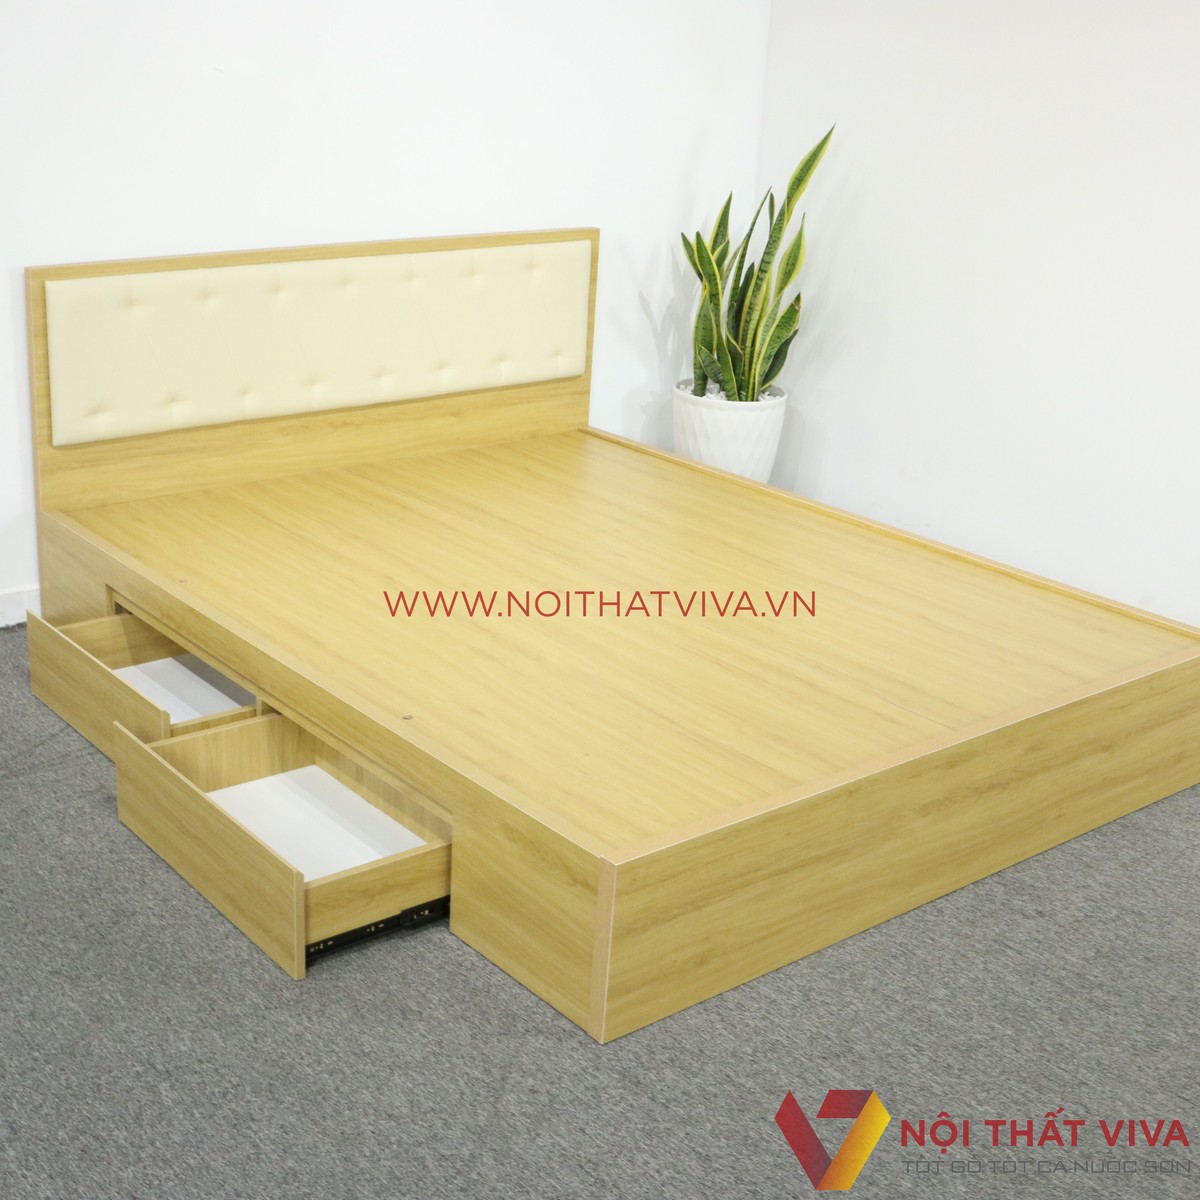 HOT] 1001 Mẫu giường ngủ gỗ MDF đẹp nhất định phải xem ngay